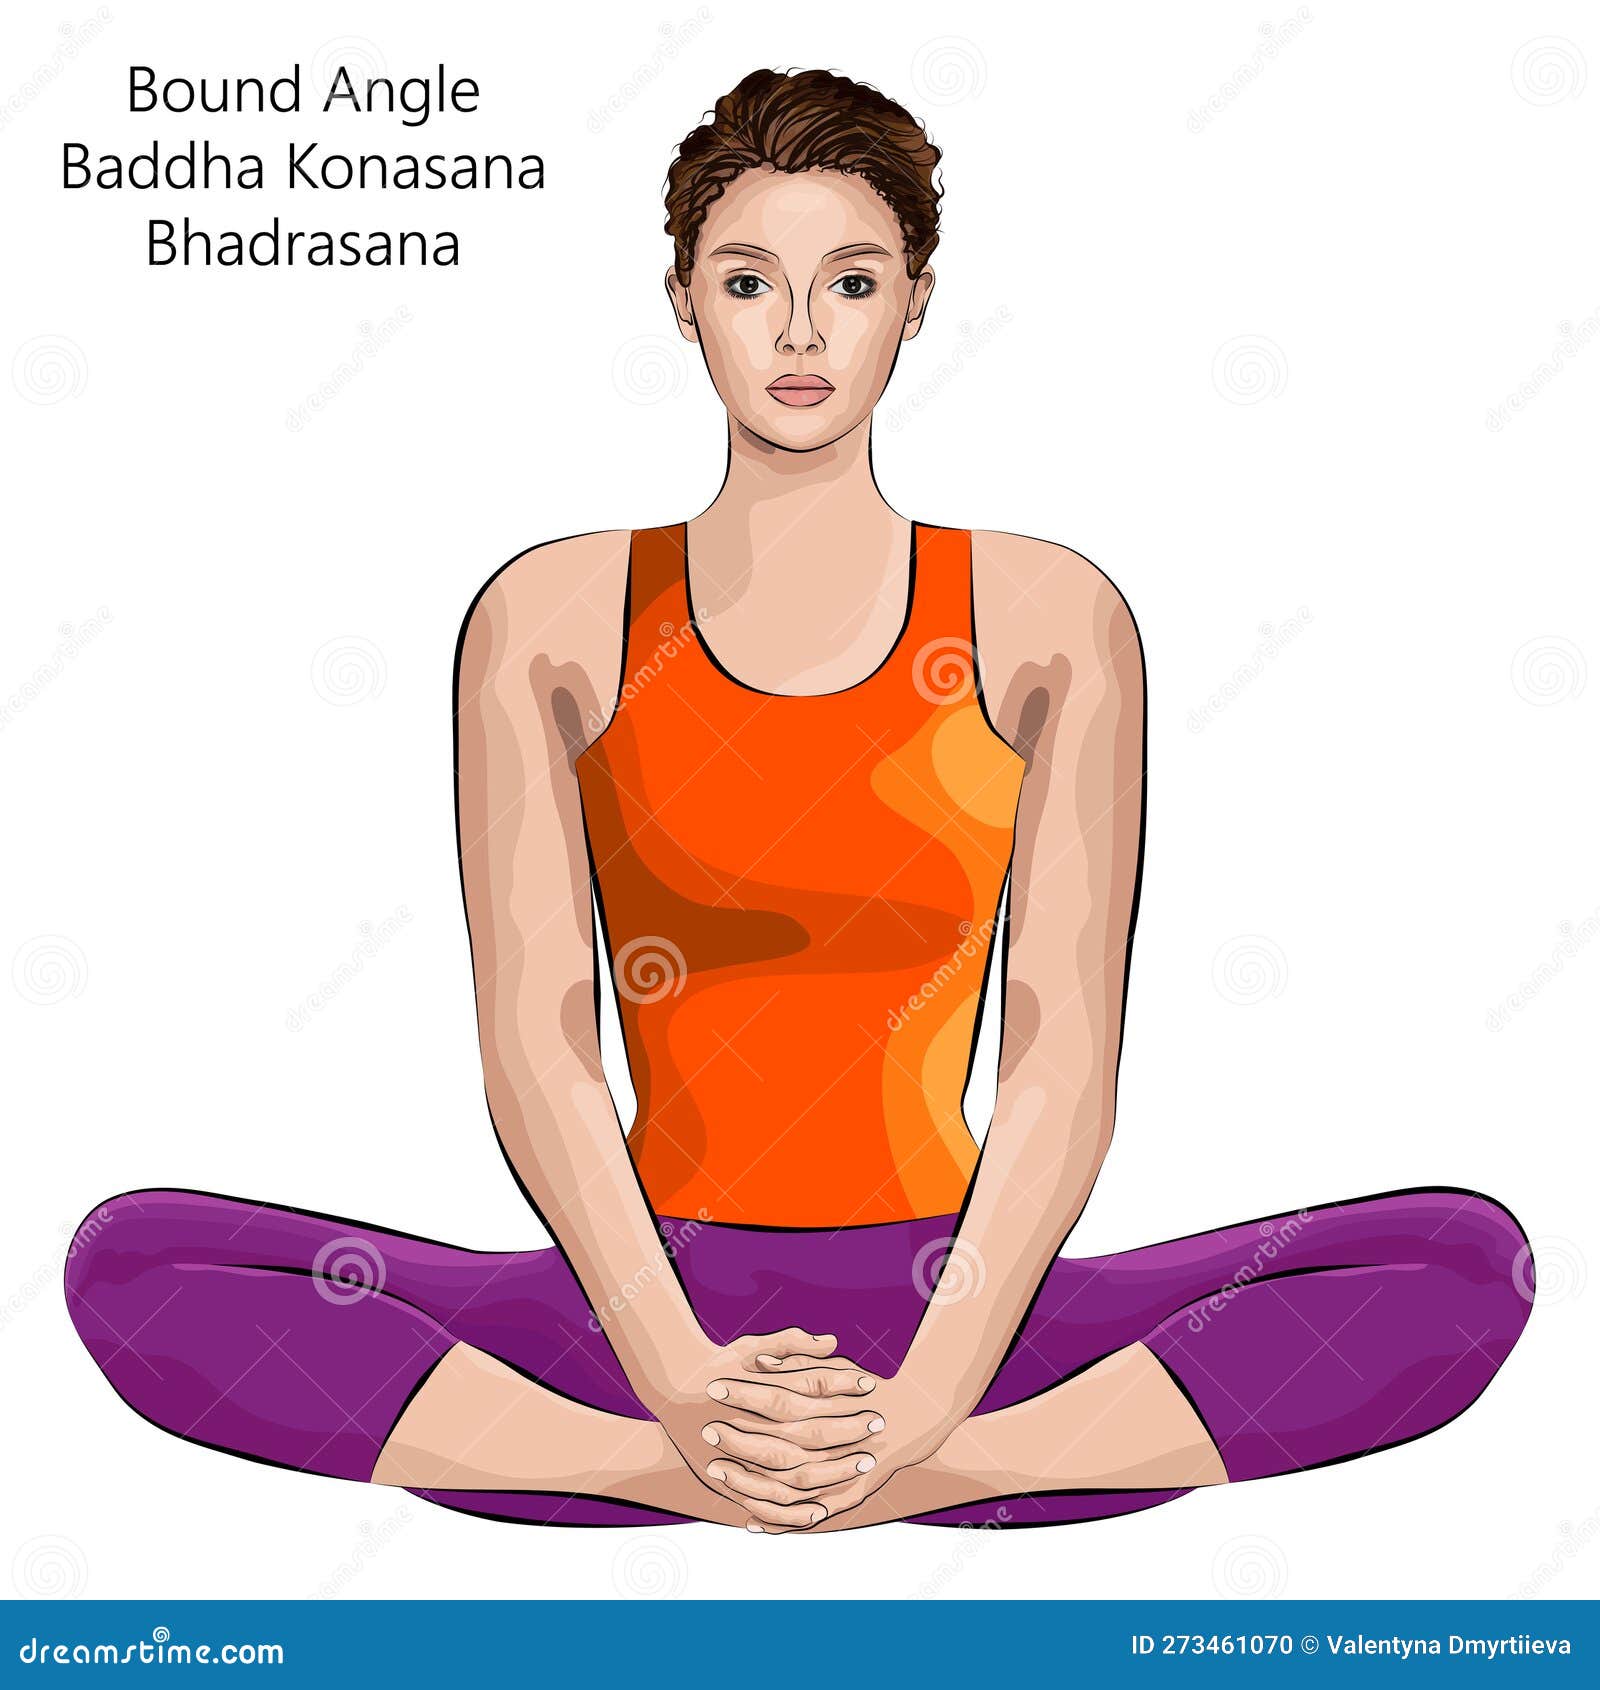 Bound Angle Pose (Baddha Konasana) In 5 Steps | YouAligned